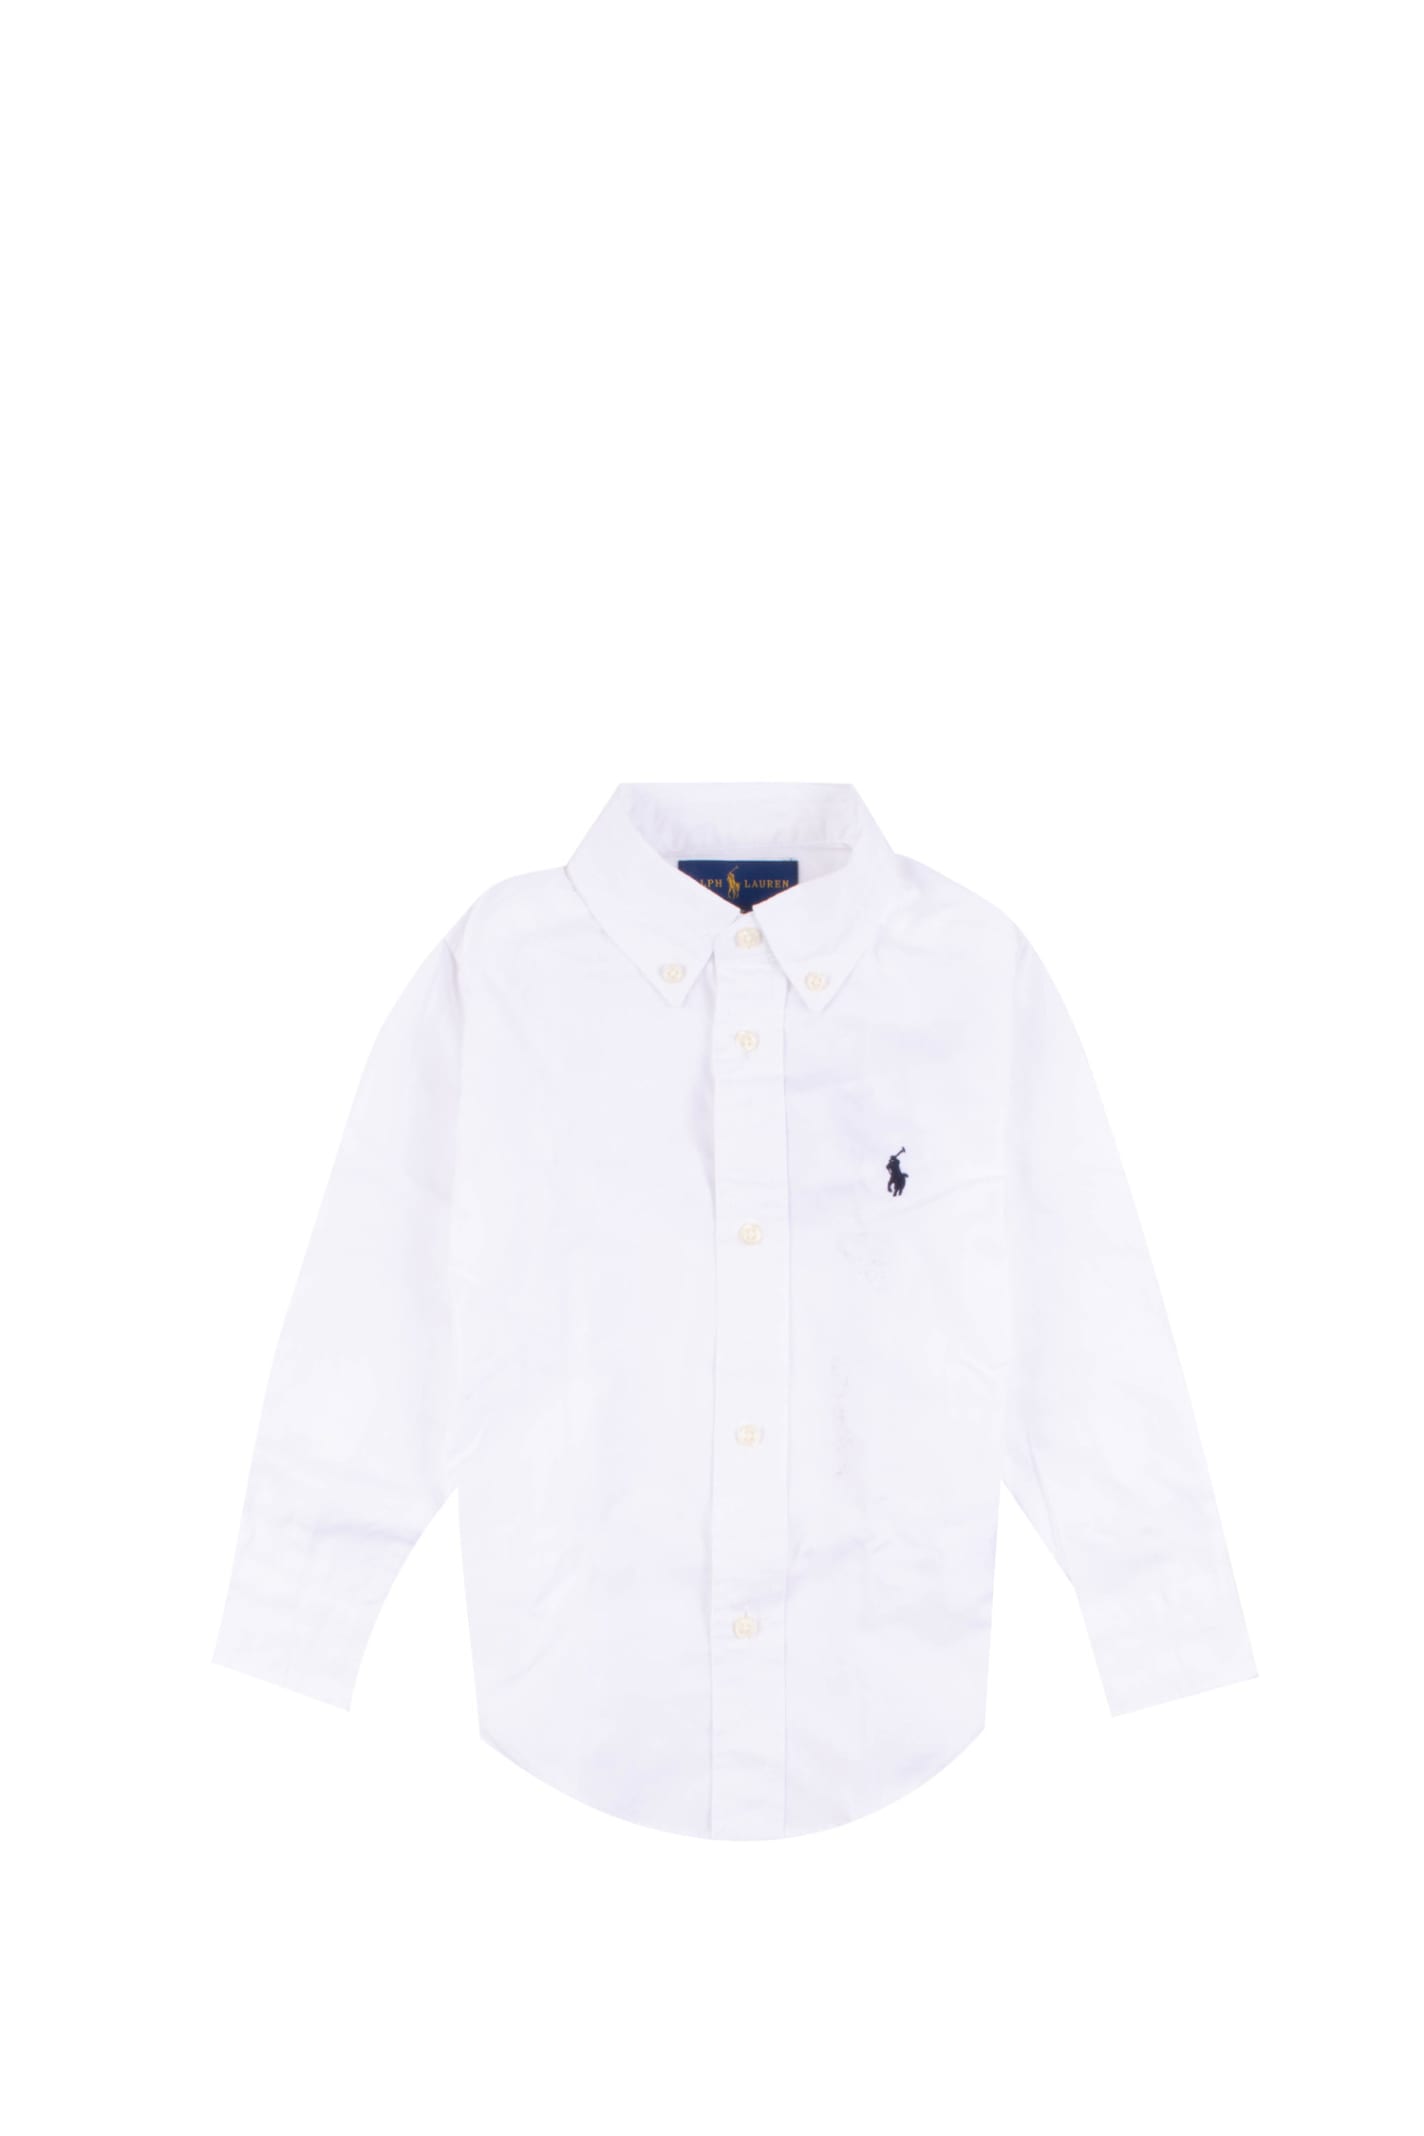 Ralph Lauren Kids' Cotton Shirt In White